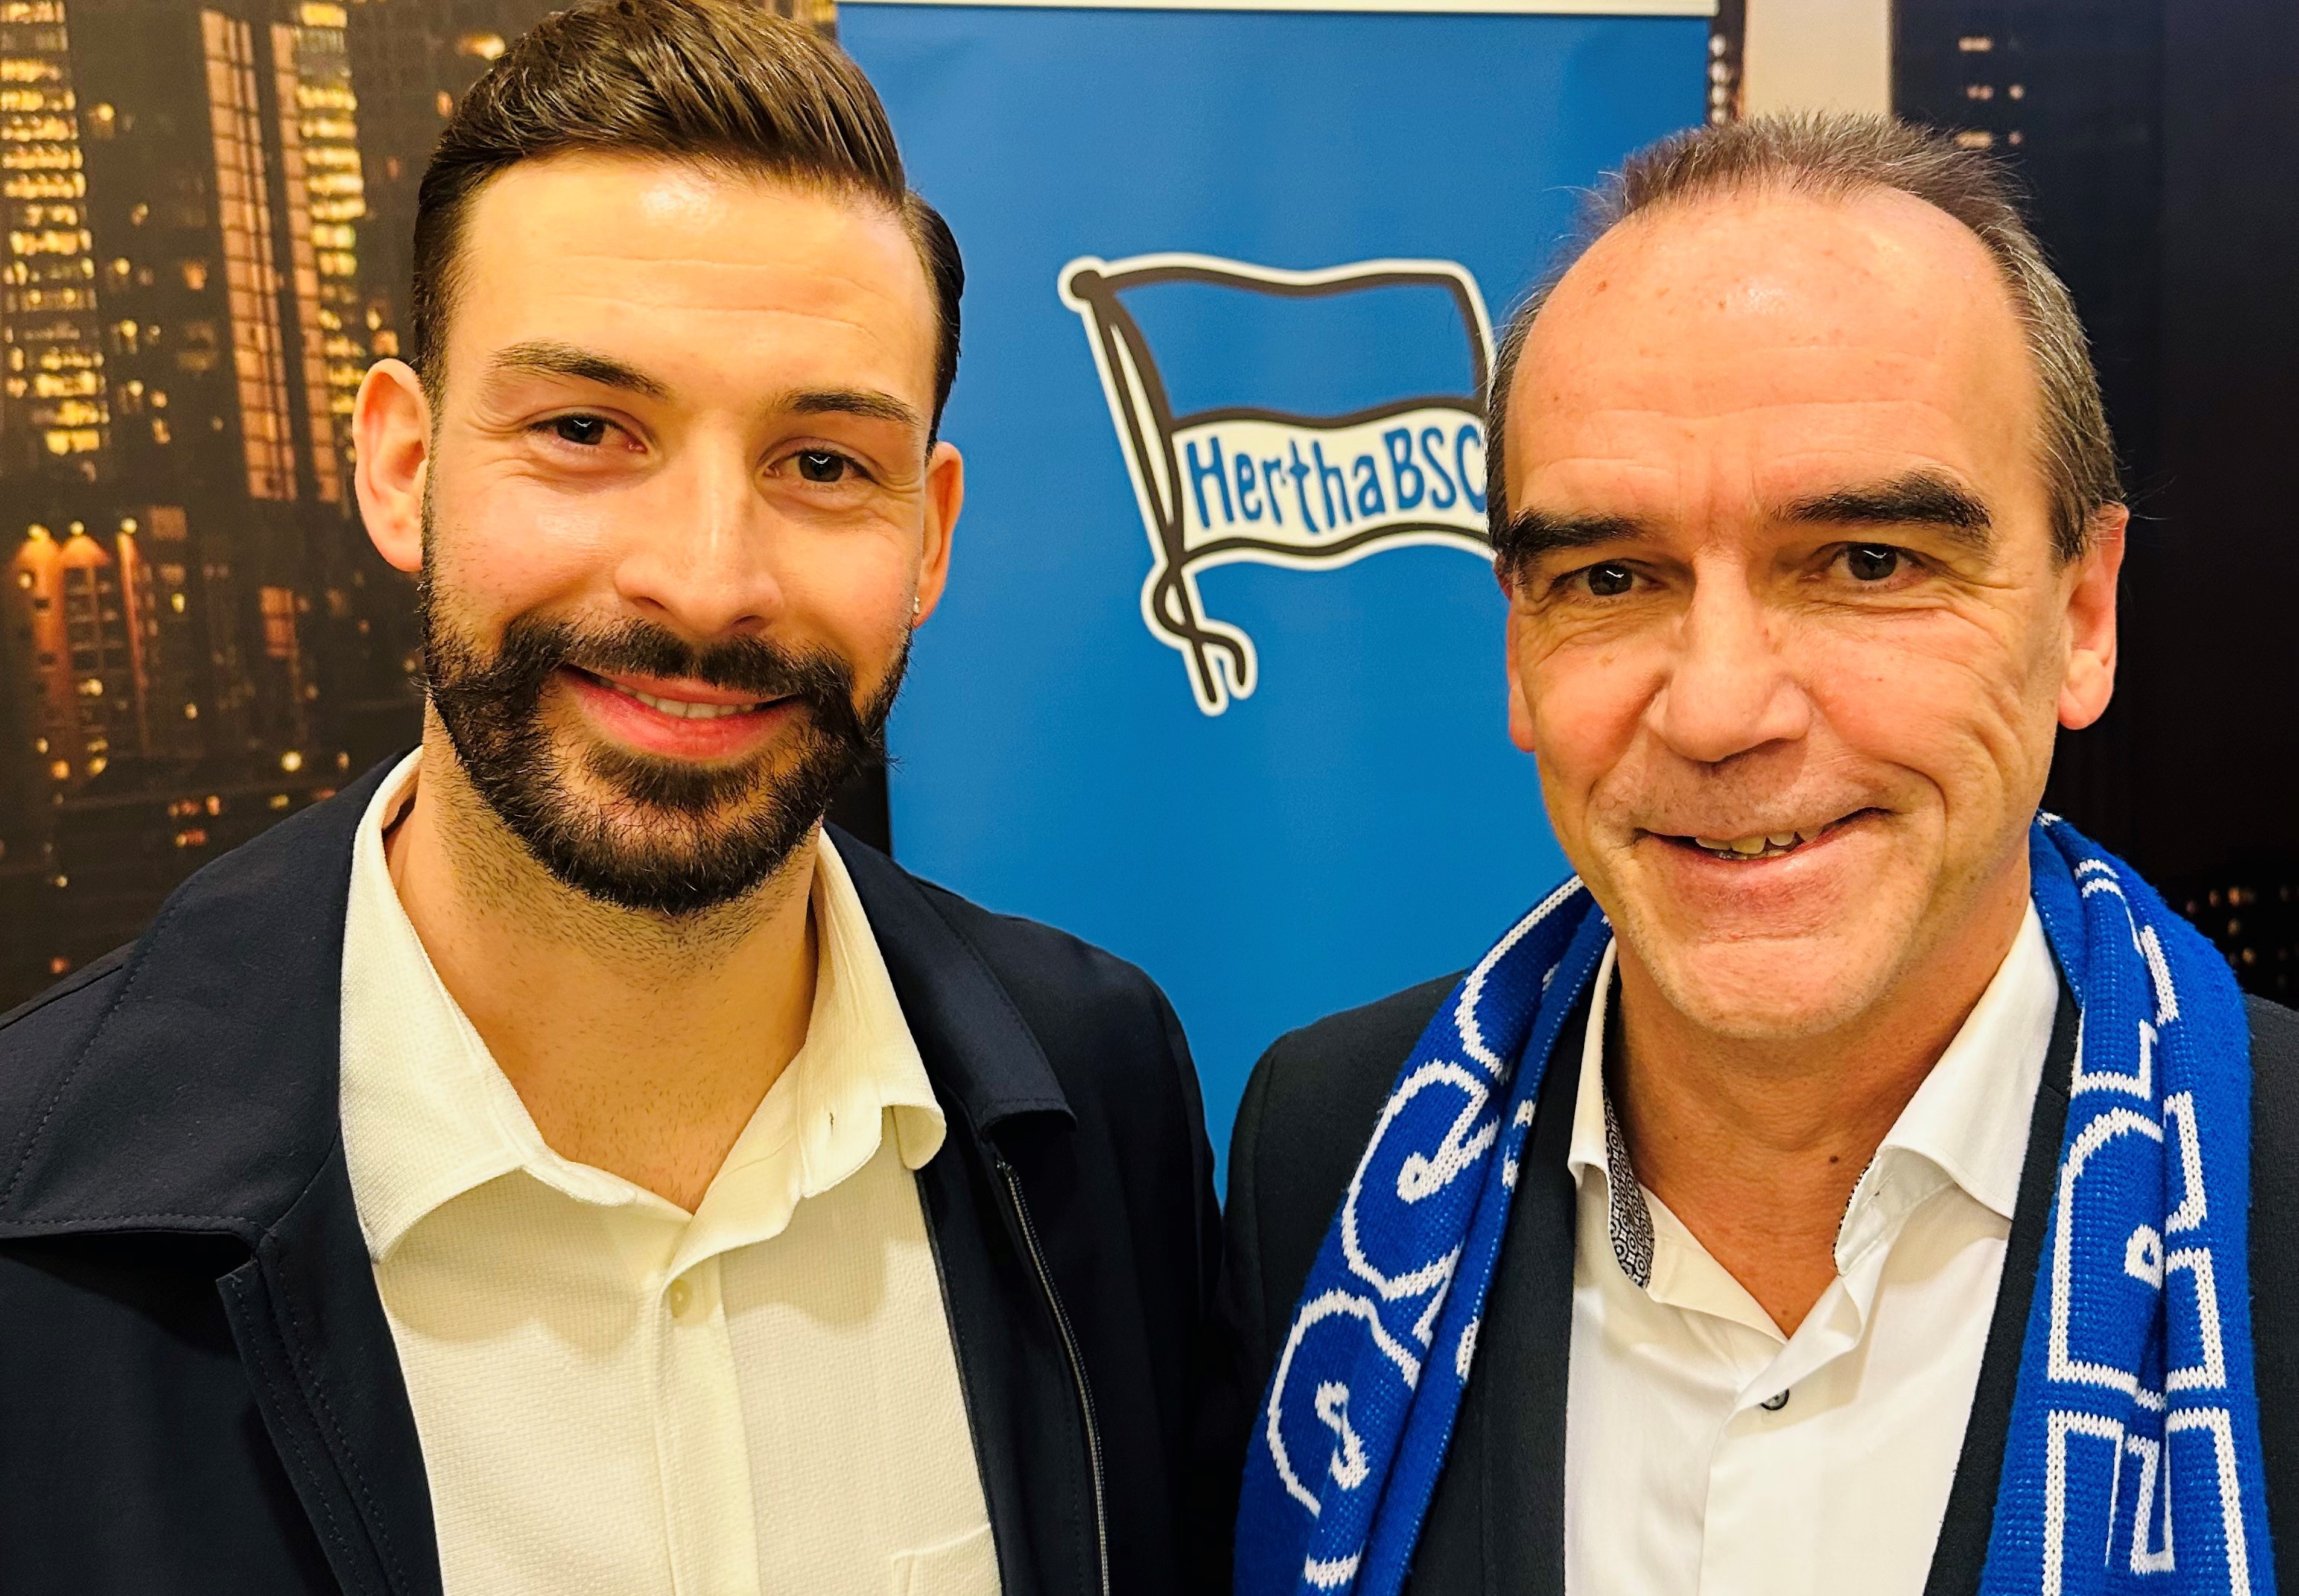 Hertha BSC und Spielbank Berlin – Sportpartnerschaft aus Leidenschaft